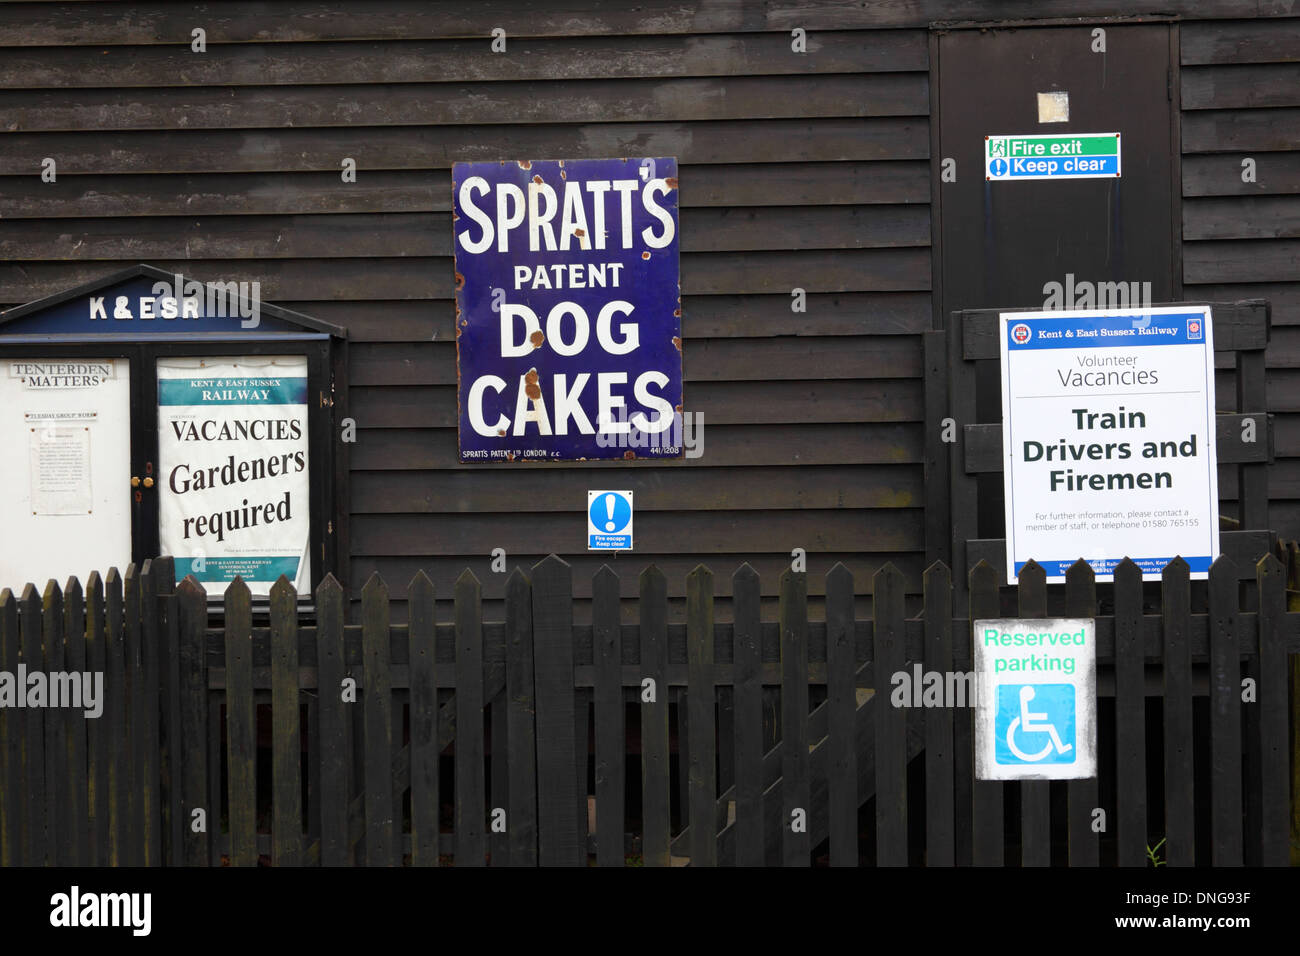 Alten altmodischen Metall Werbung für Spratts Hund Kuchen und Stellenangebote, Tenterden Bahnhof, Kent & East Sussex Railway, England Stockfoto